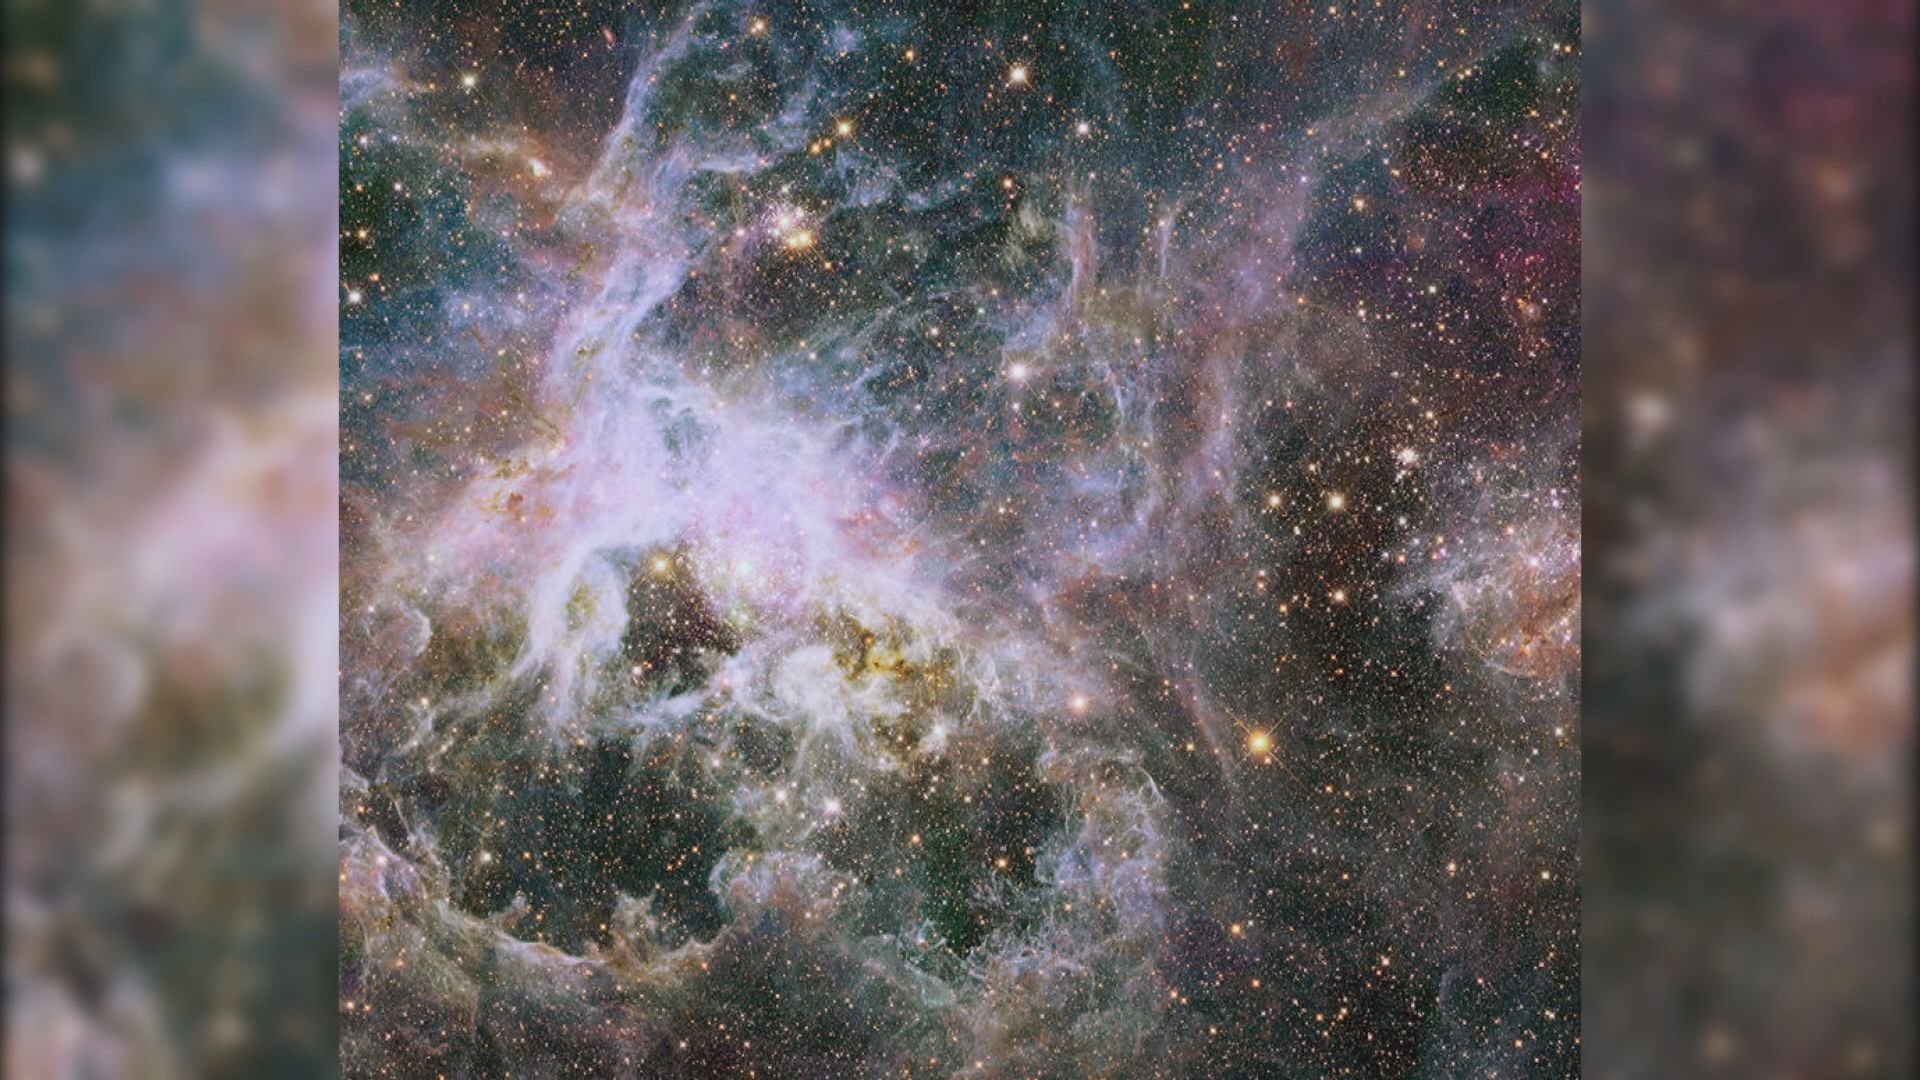 【環球薈報】韋伯太空望遠鏡傳回「狼蛛星雲」清晰圖像